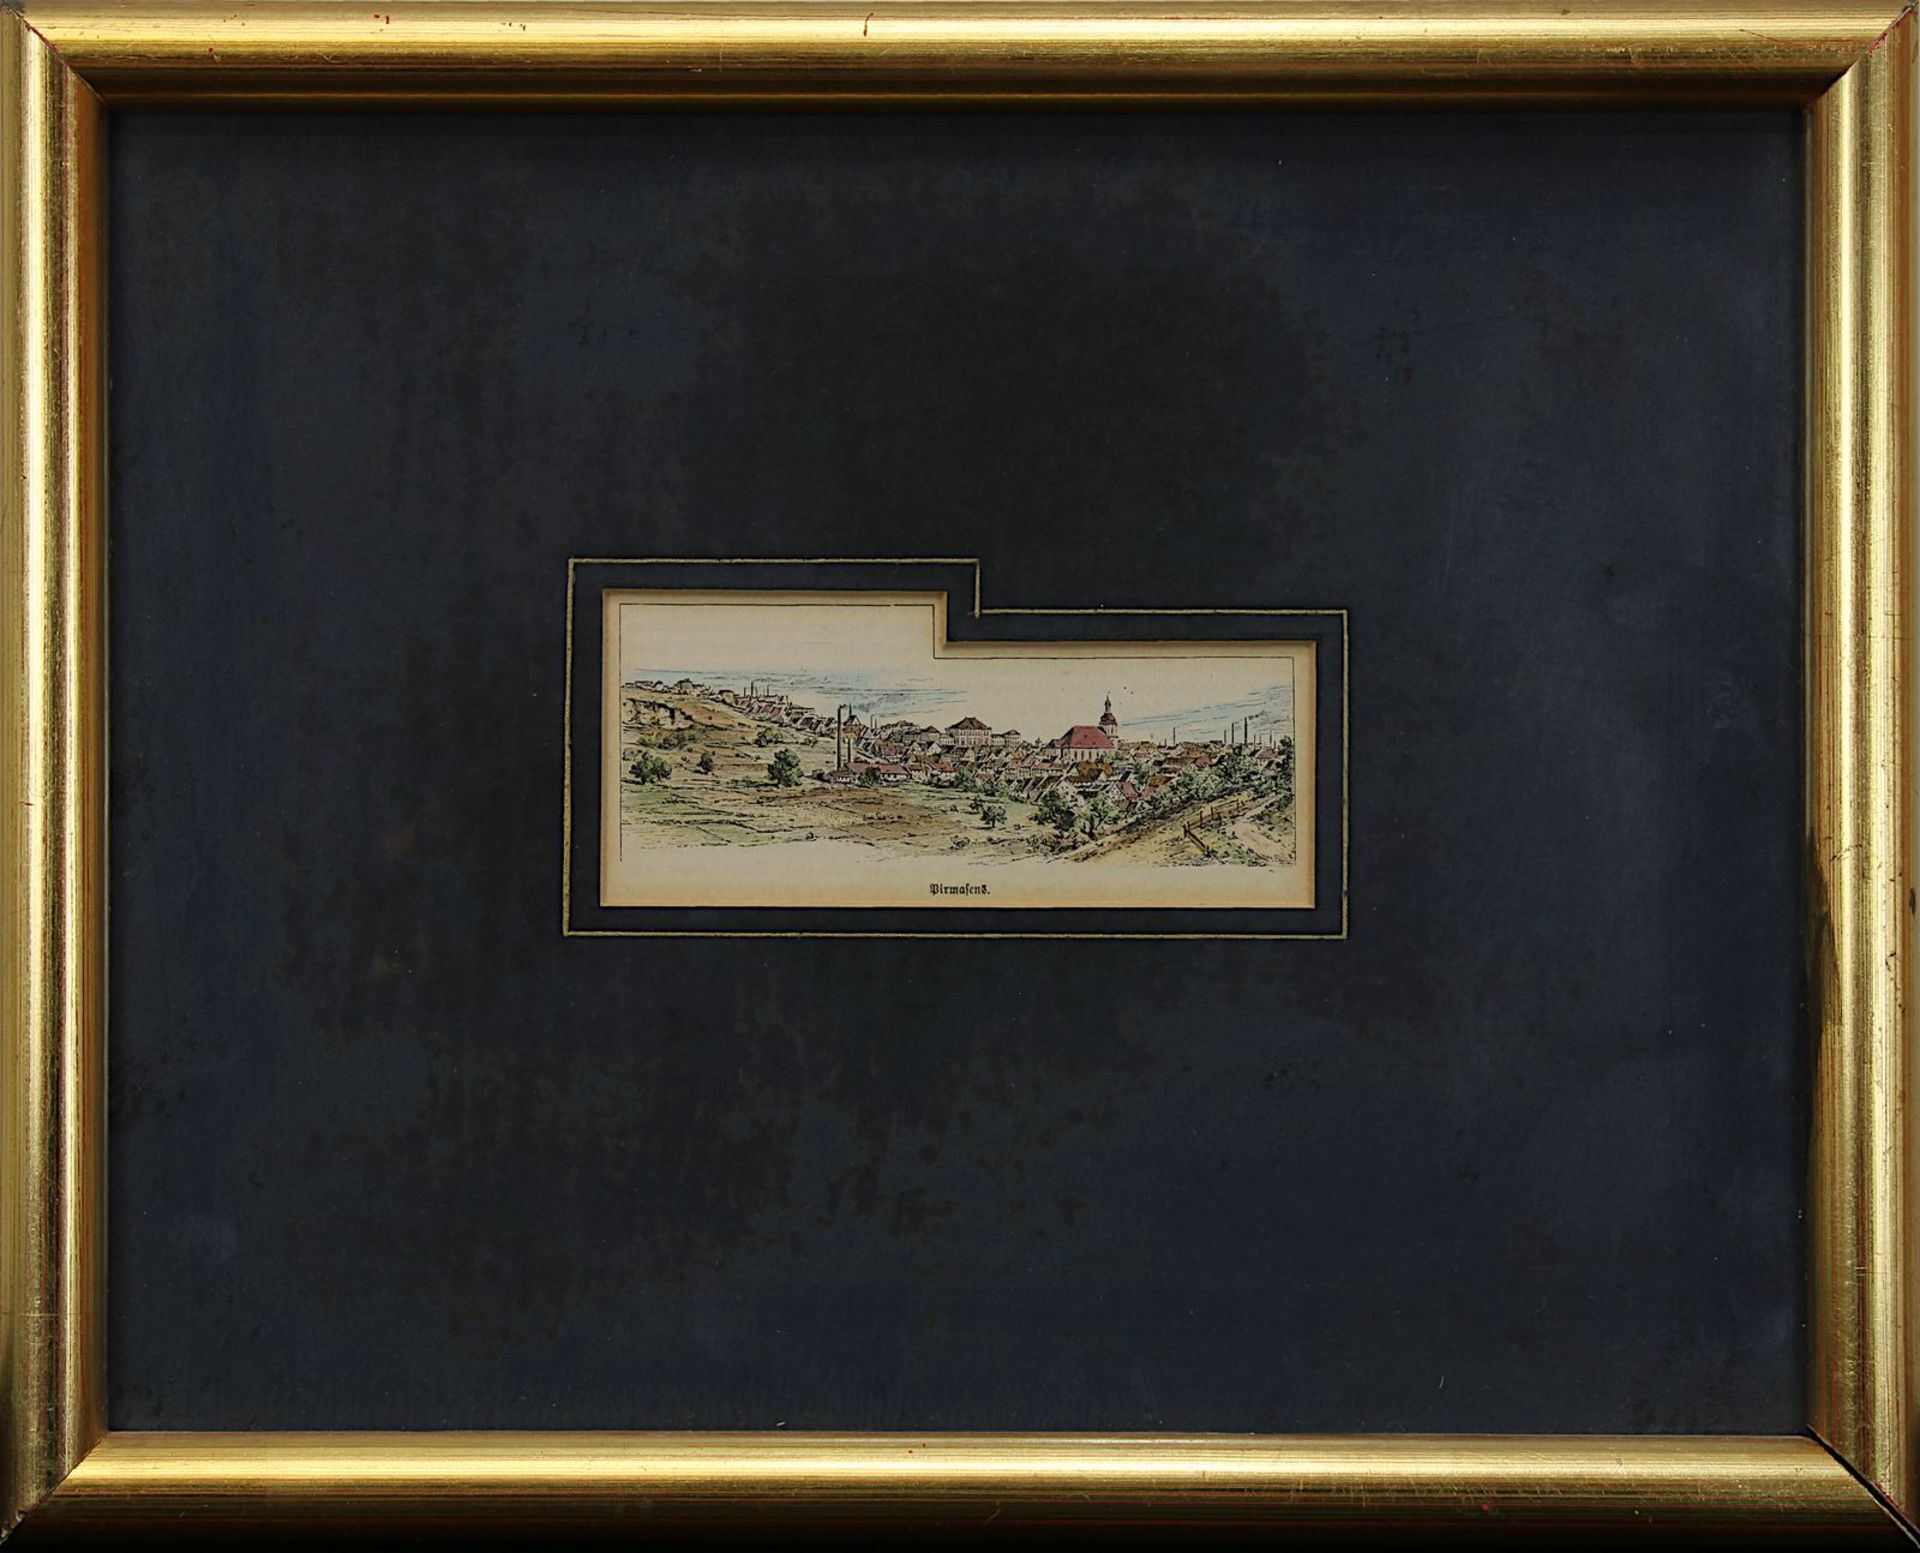 Pirmasens, kolorierter Holzstich um 1880, 6 x 13,5 cm (Passepartoutausschnitt), Papier leicht